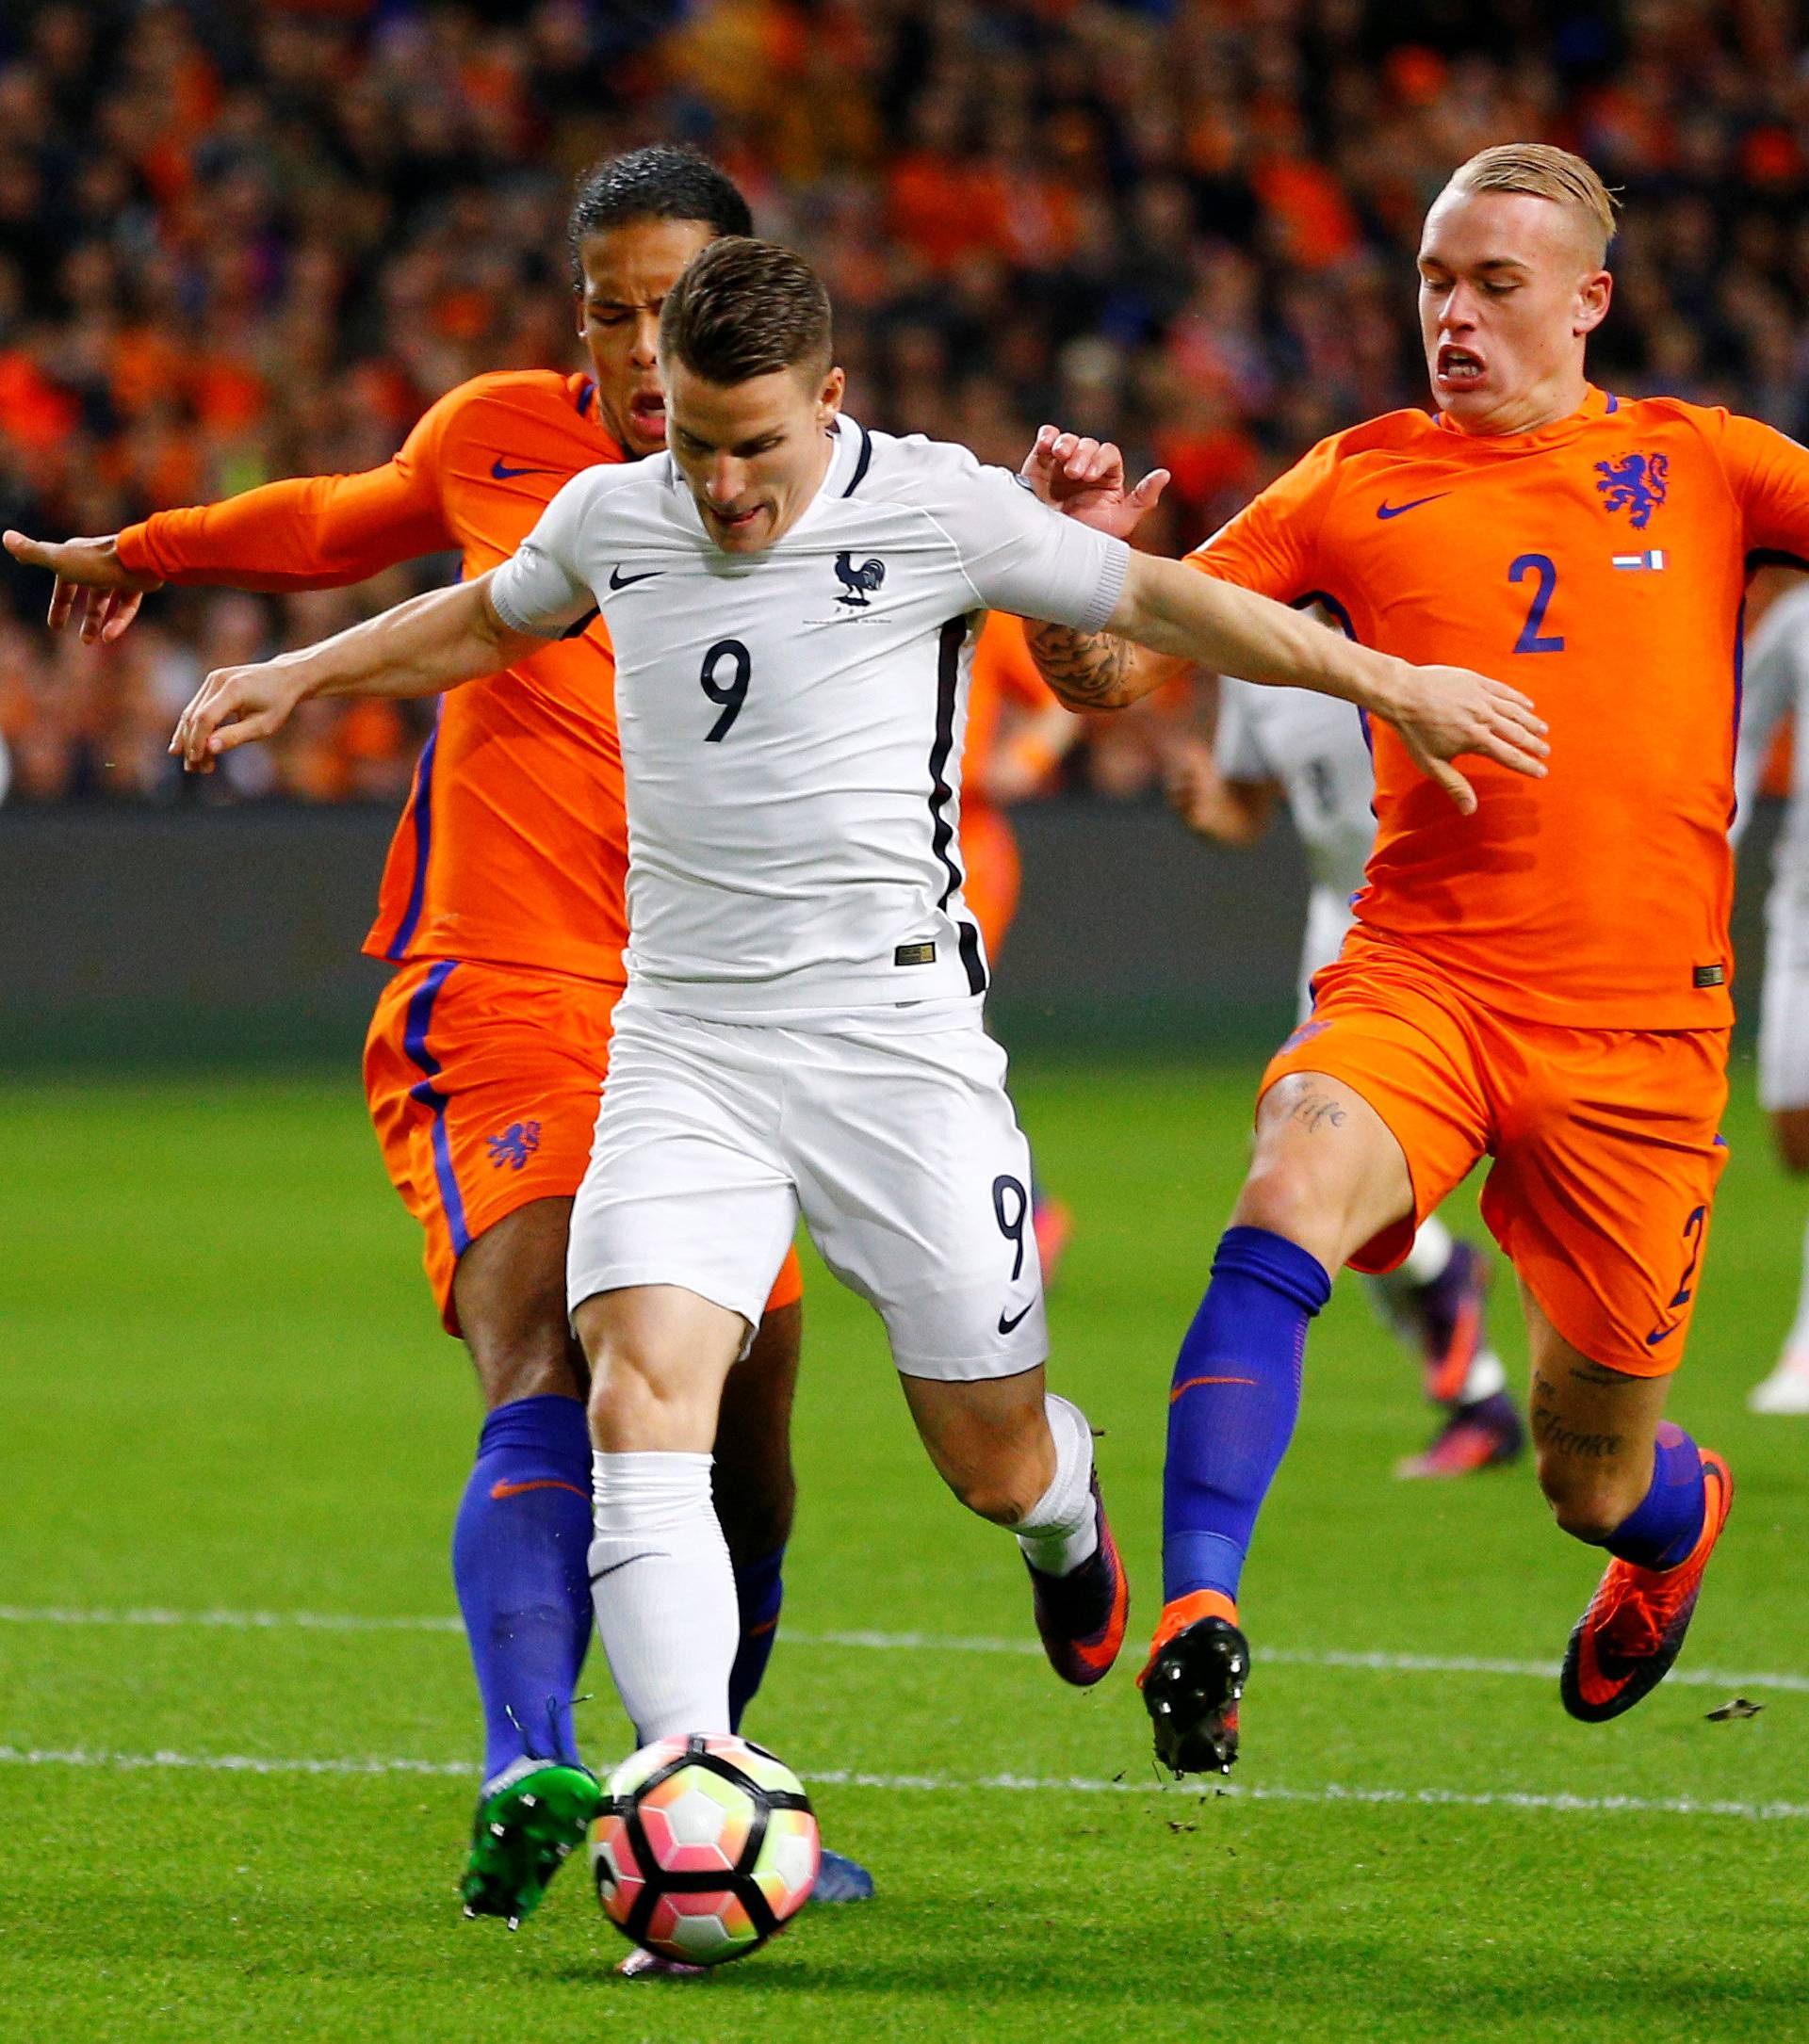 Football Soccer - Netherlands v France - World Cup 2018 Qualifier